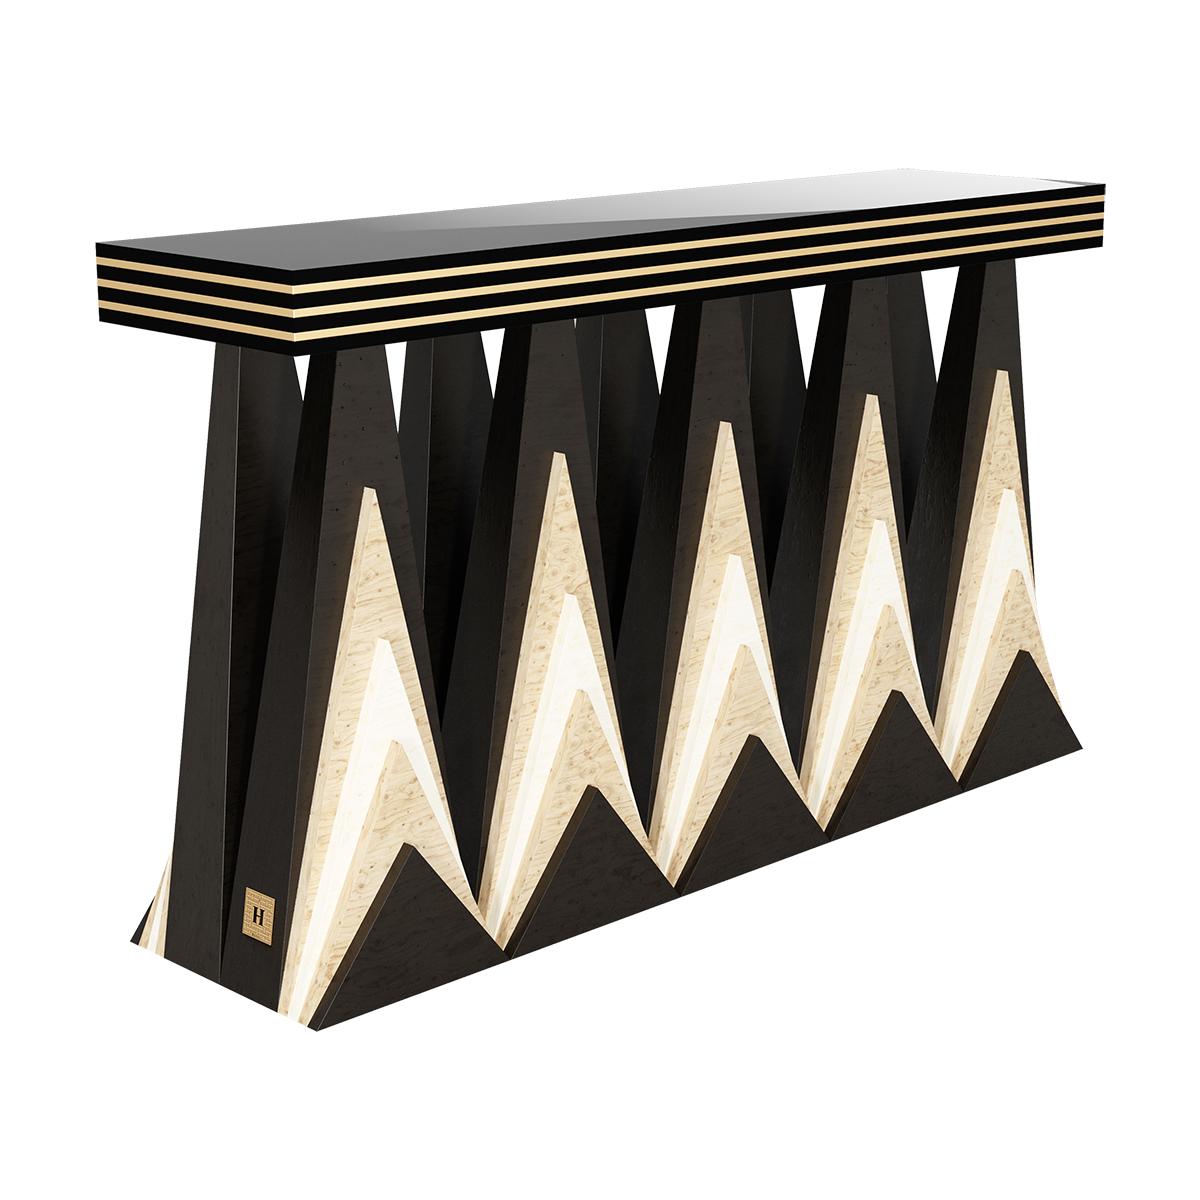 Raplee Console Table ist ein moderner Konsolentisch im Stil des Art déco. Das einzigartige Möbelstück für den Eingangsbereich ist nicht nur von diesem Designstil der 20er Jahre inspiriert, sondern hat auch eine weitere Inspirationsquelle: den Raplee